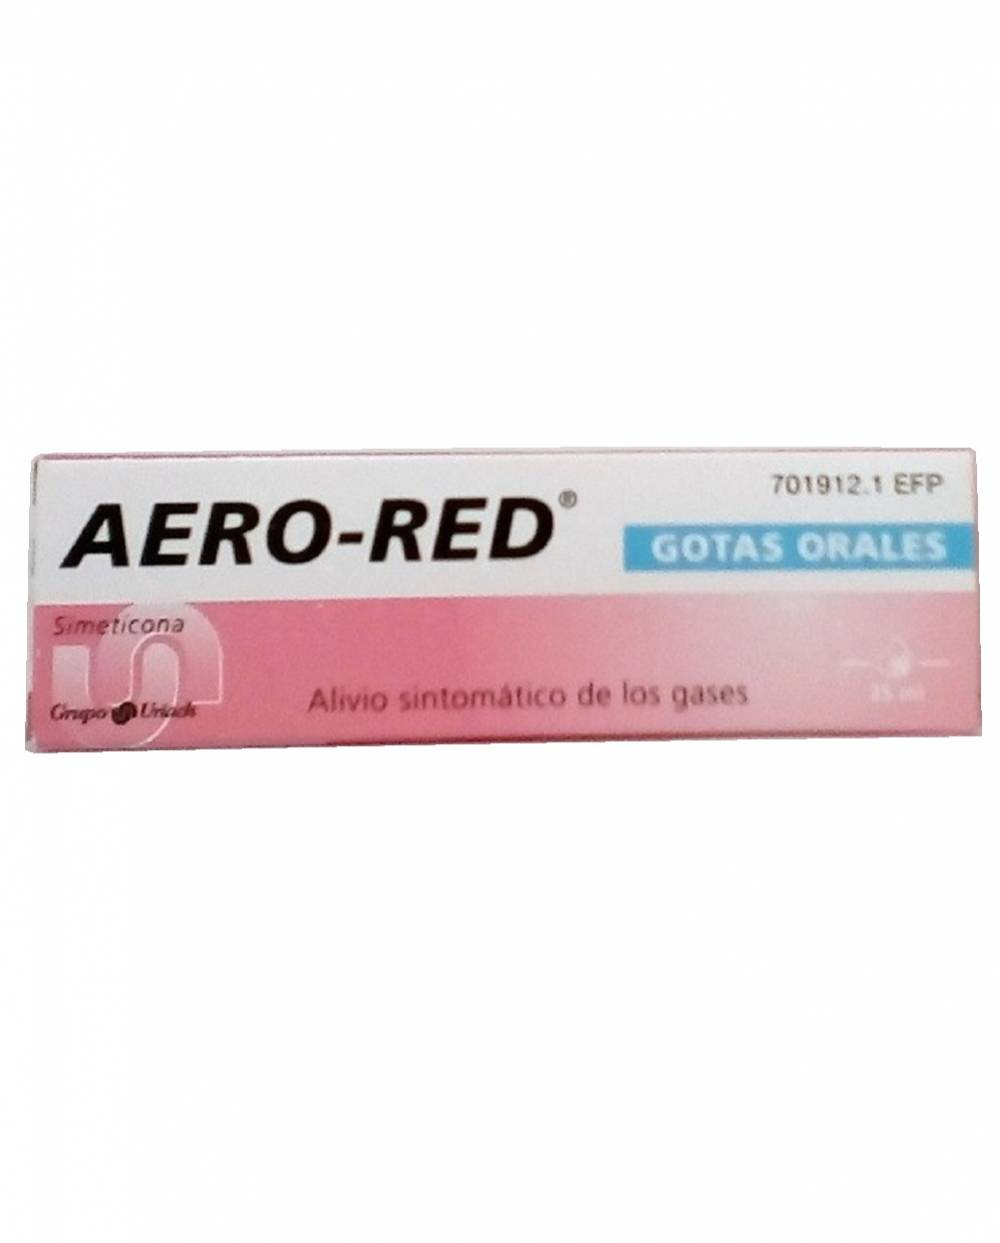 Aero-red - 25 ml - gotas orales